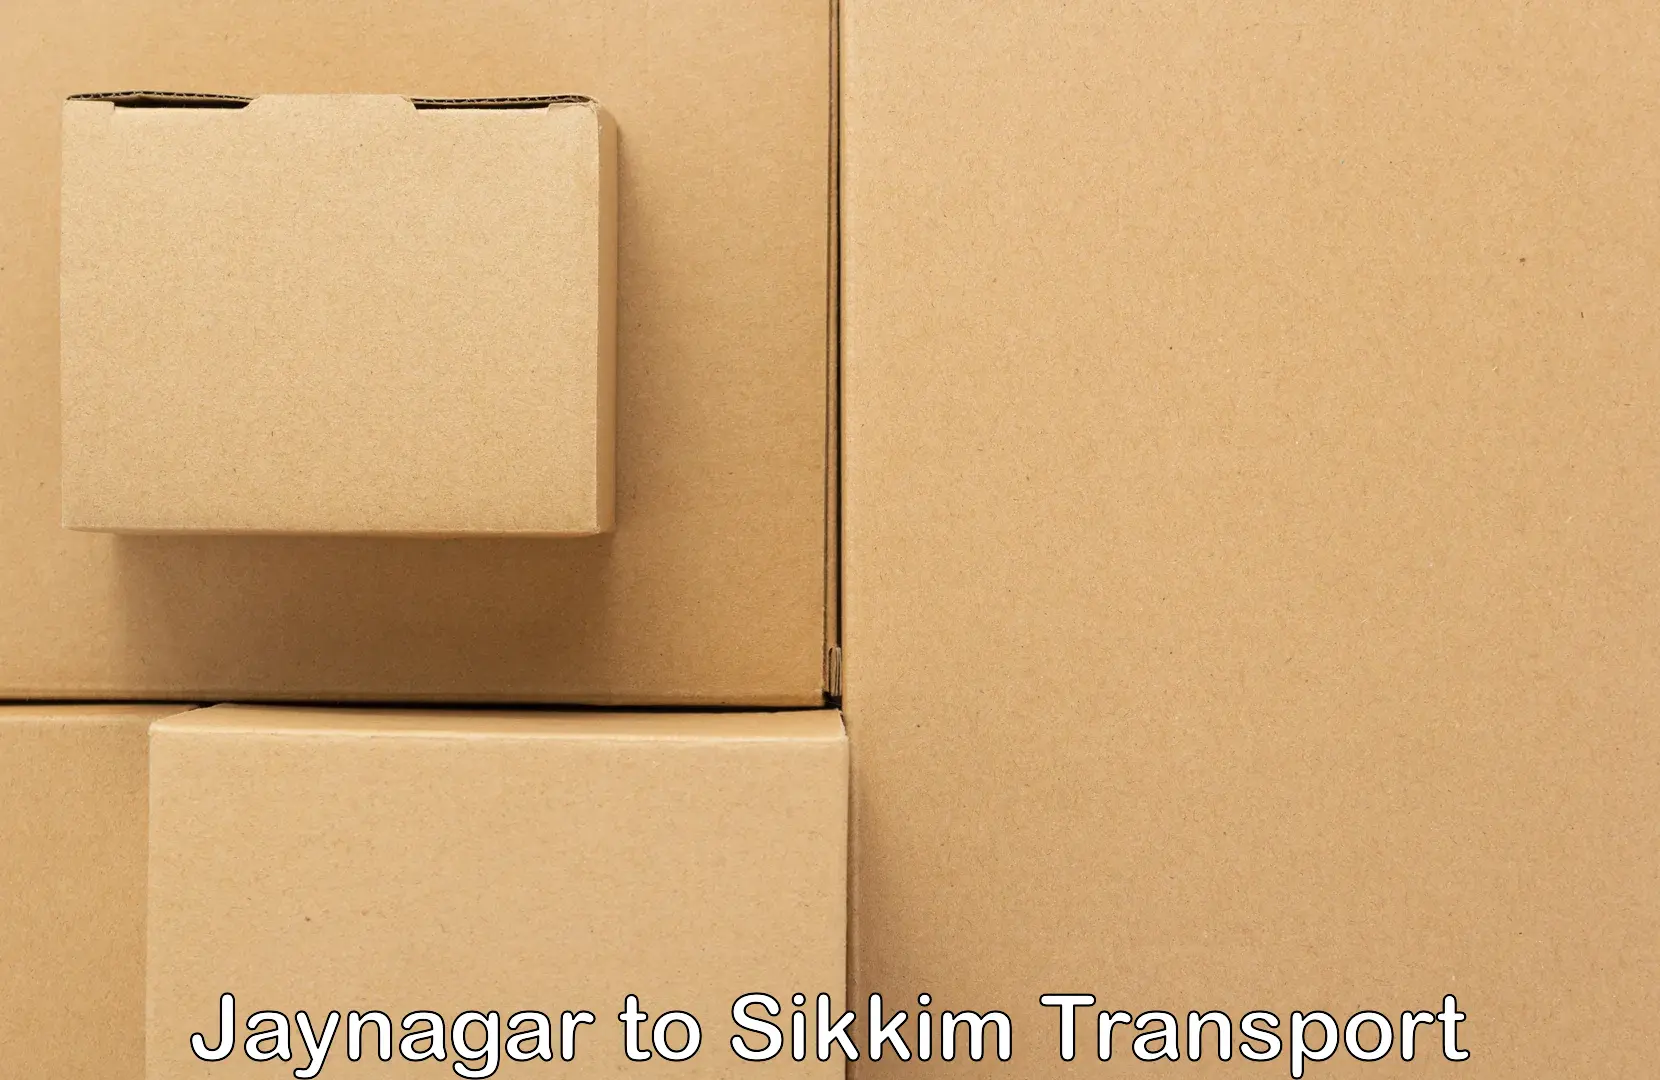 Two wheeler parcel service Jaynagar to Jorethang